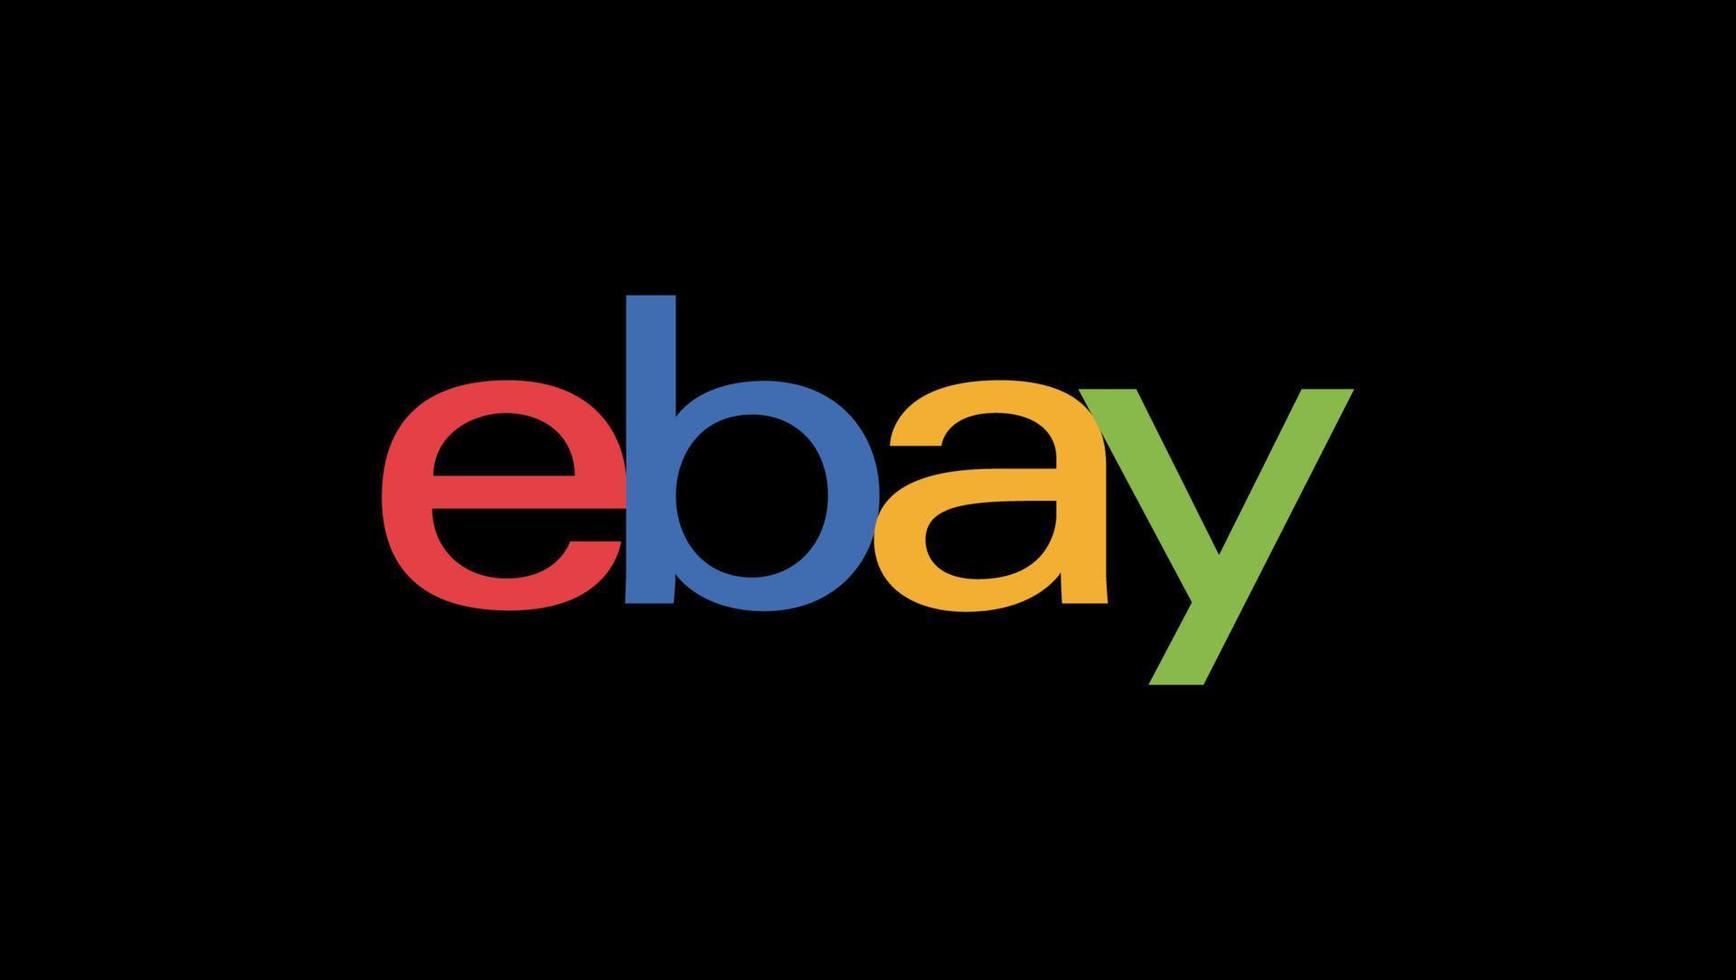 Ebay logo vector, Ebay icon free vector